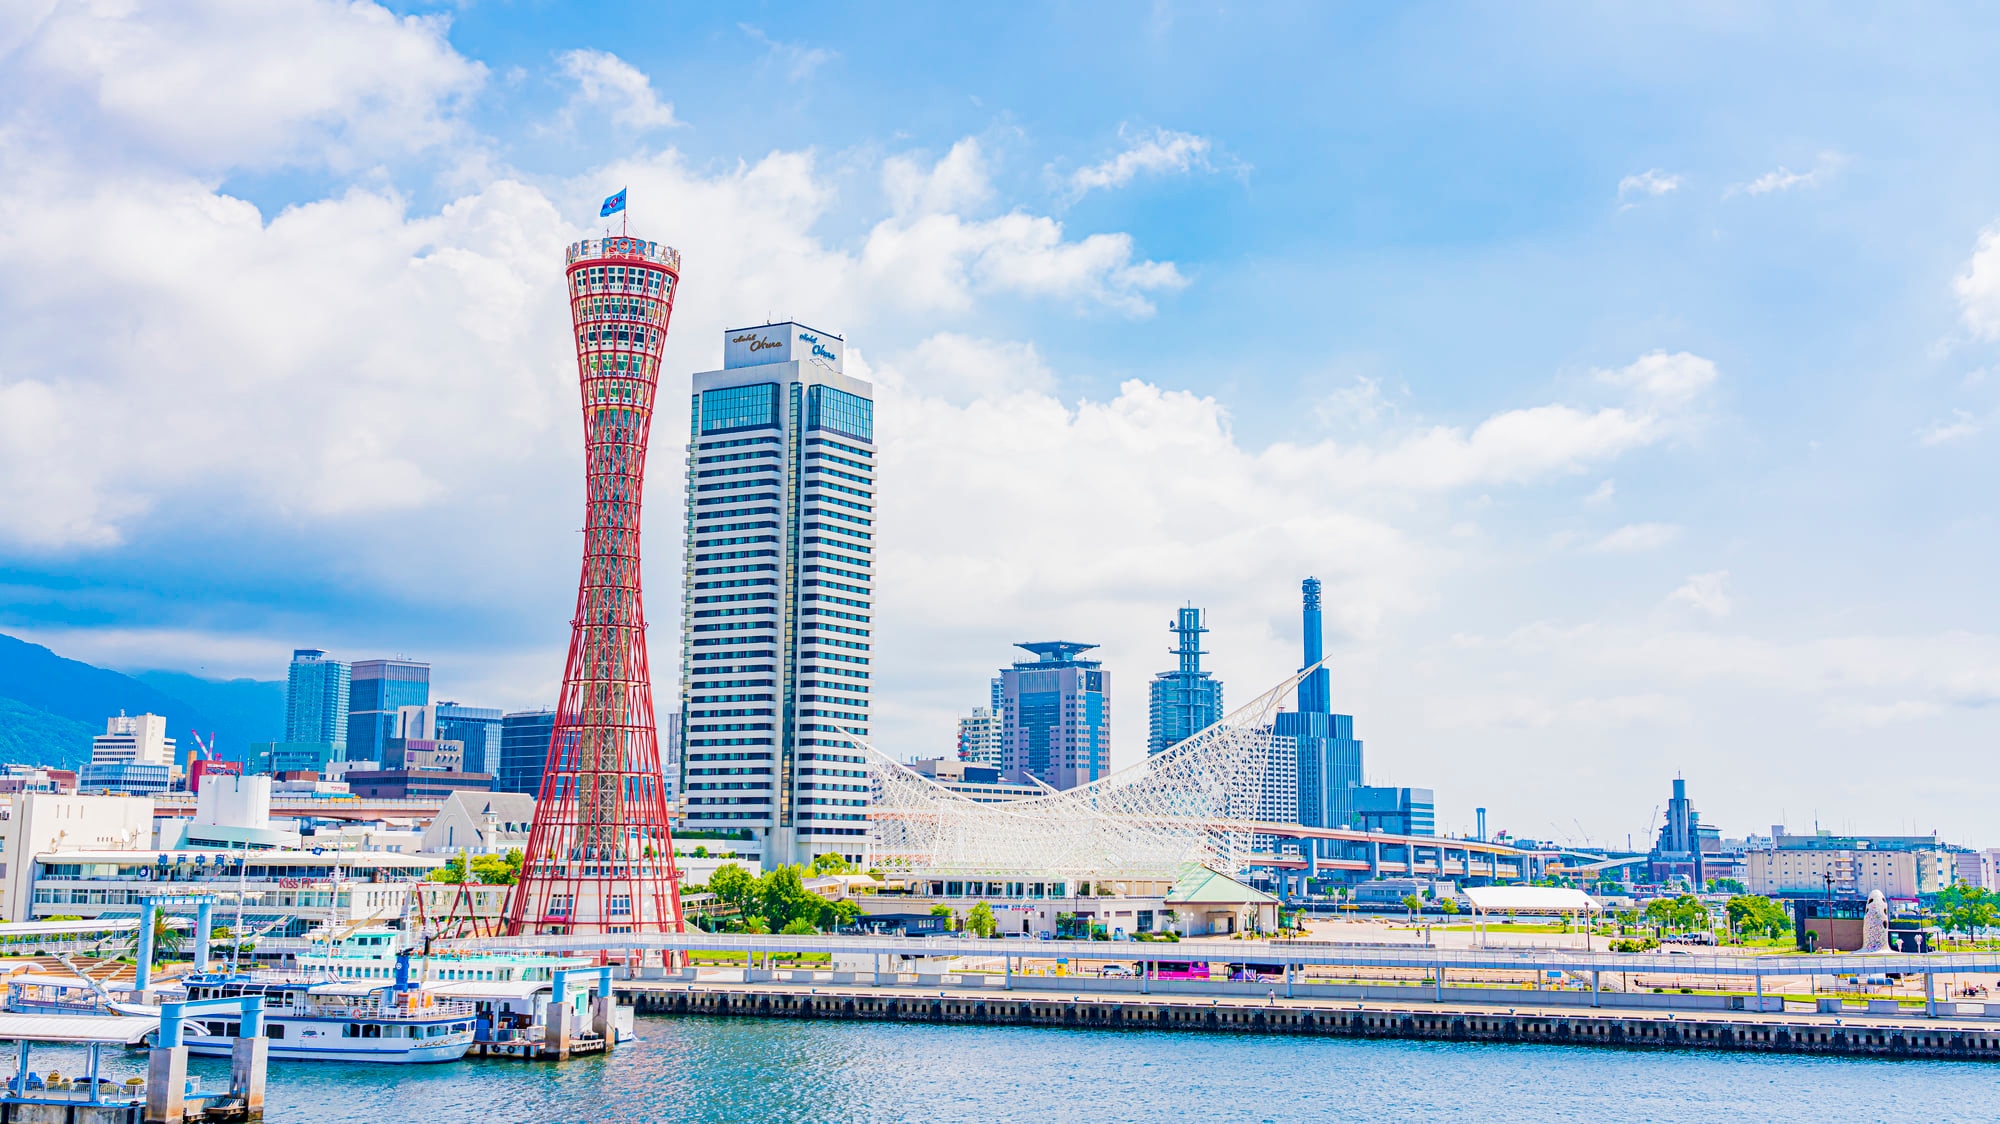 オシャレな雰囲気漂う神戸の人気ホテル 格安なビジネスや温泉もあり Skyticket 観光ガイド